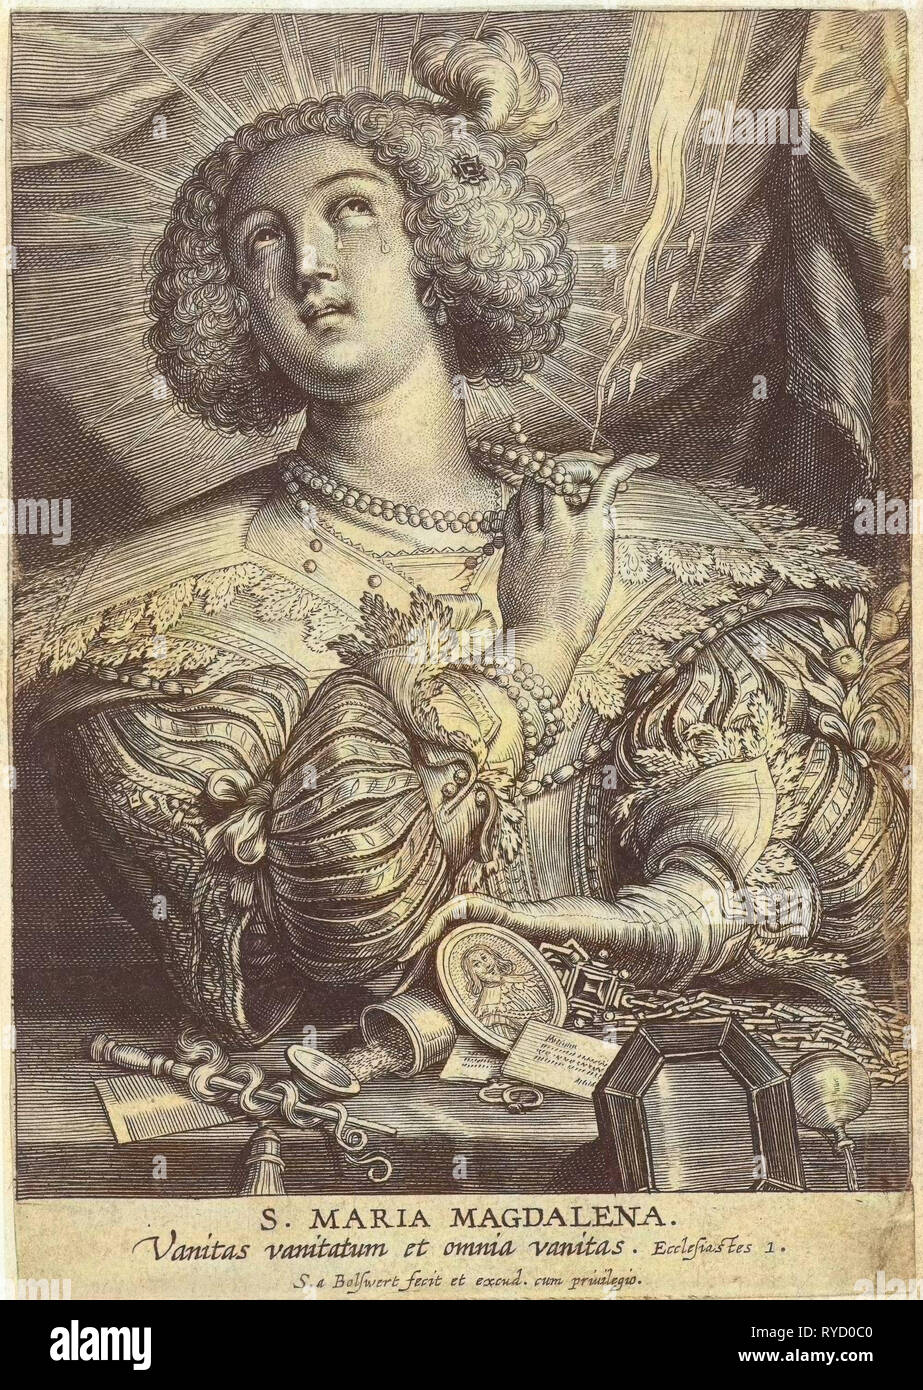 Marie Madeleine se débarrasse de ses richesses, imprimer bouilloire : Adamsz). By anonyme, Peter Paul Rubens, 1596 - 1659 Banque D'Images